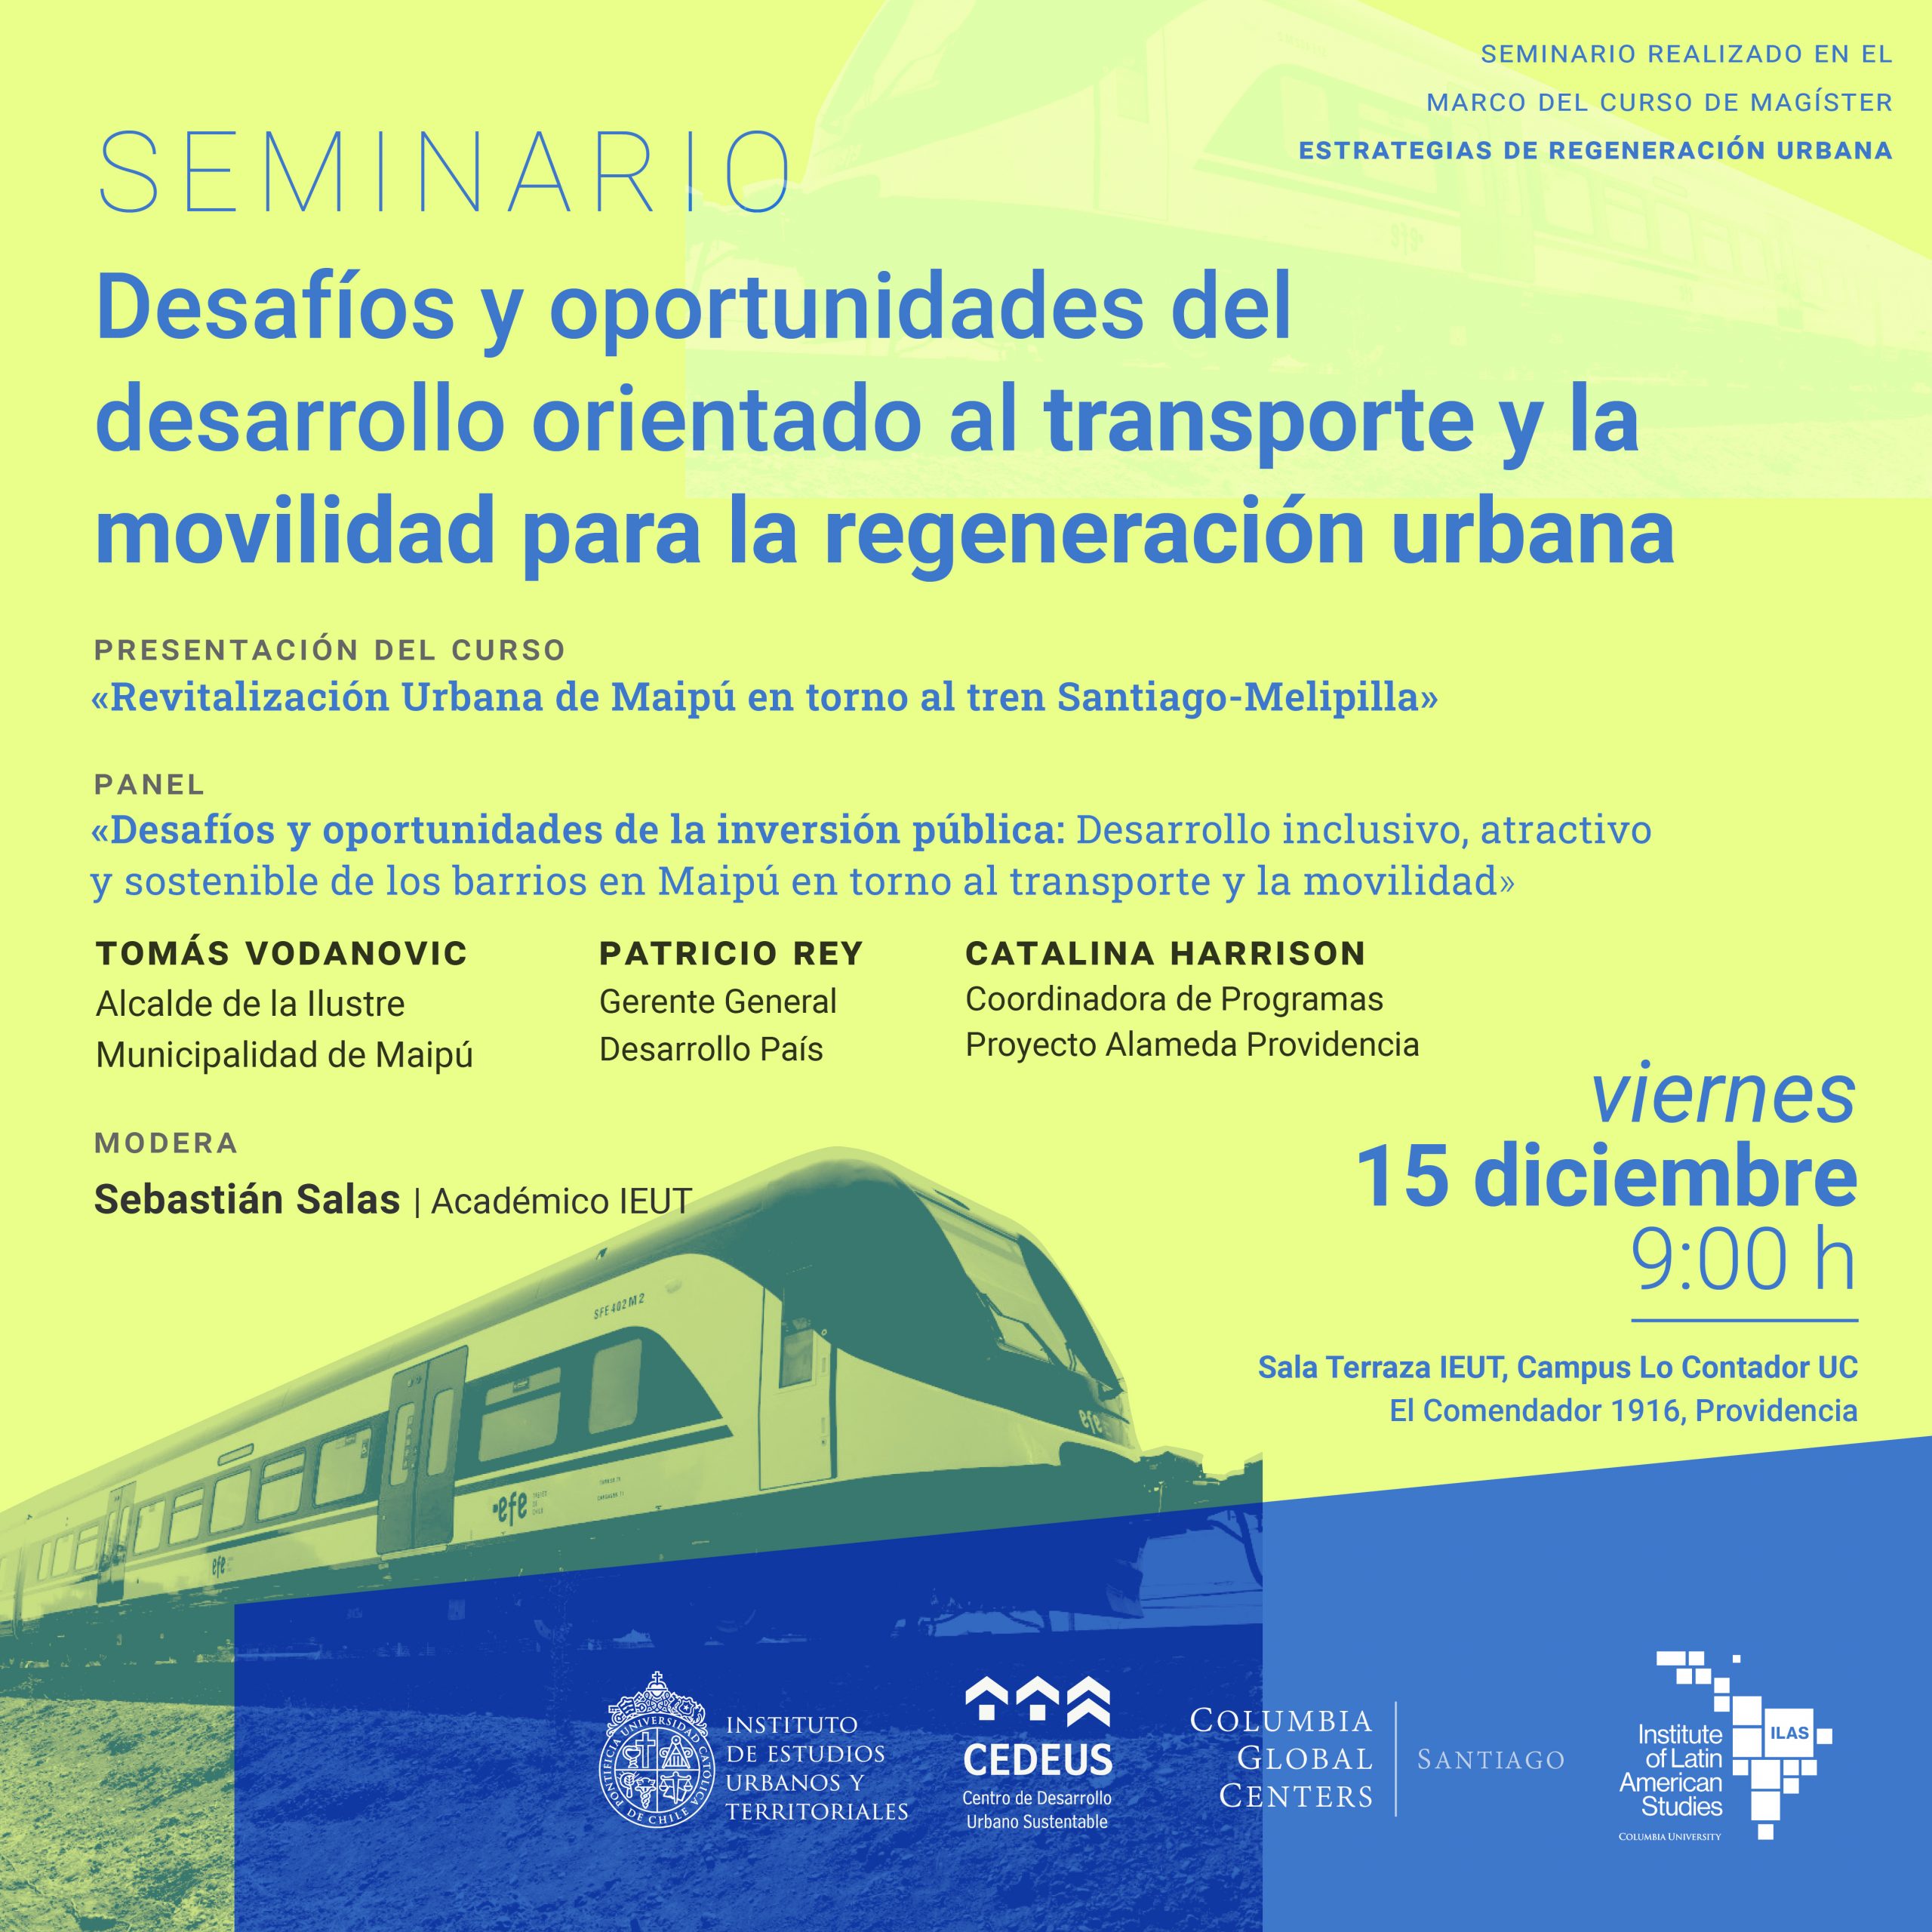 SEMINARIO | Desafíos y oportunidades del desarrollo orientado al transporte y la movilidad para la regeneración urbana